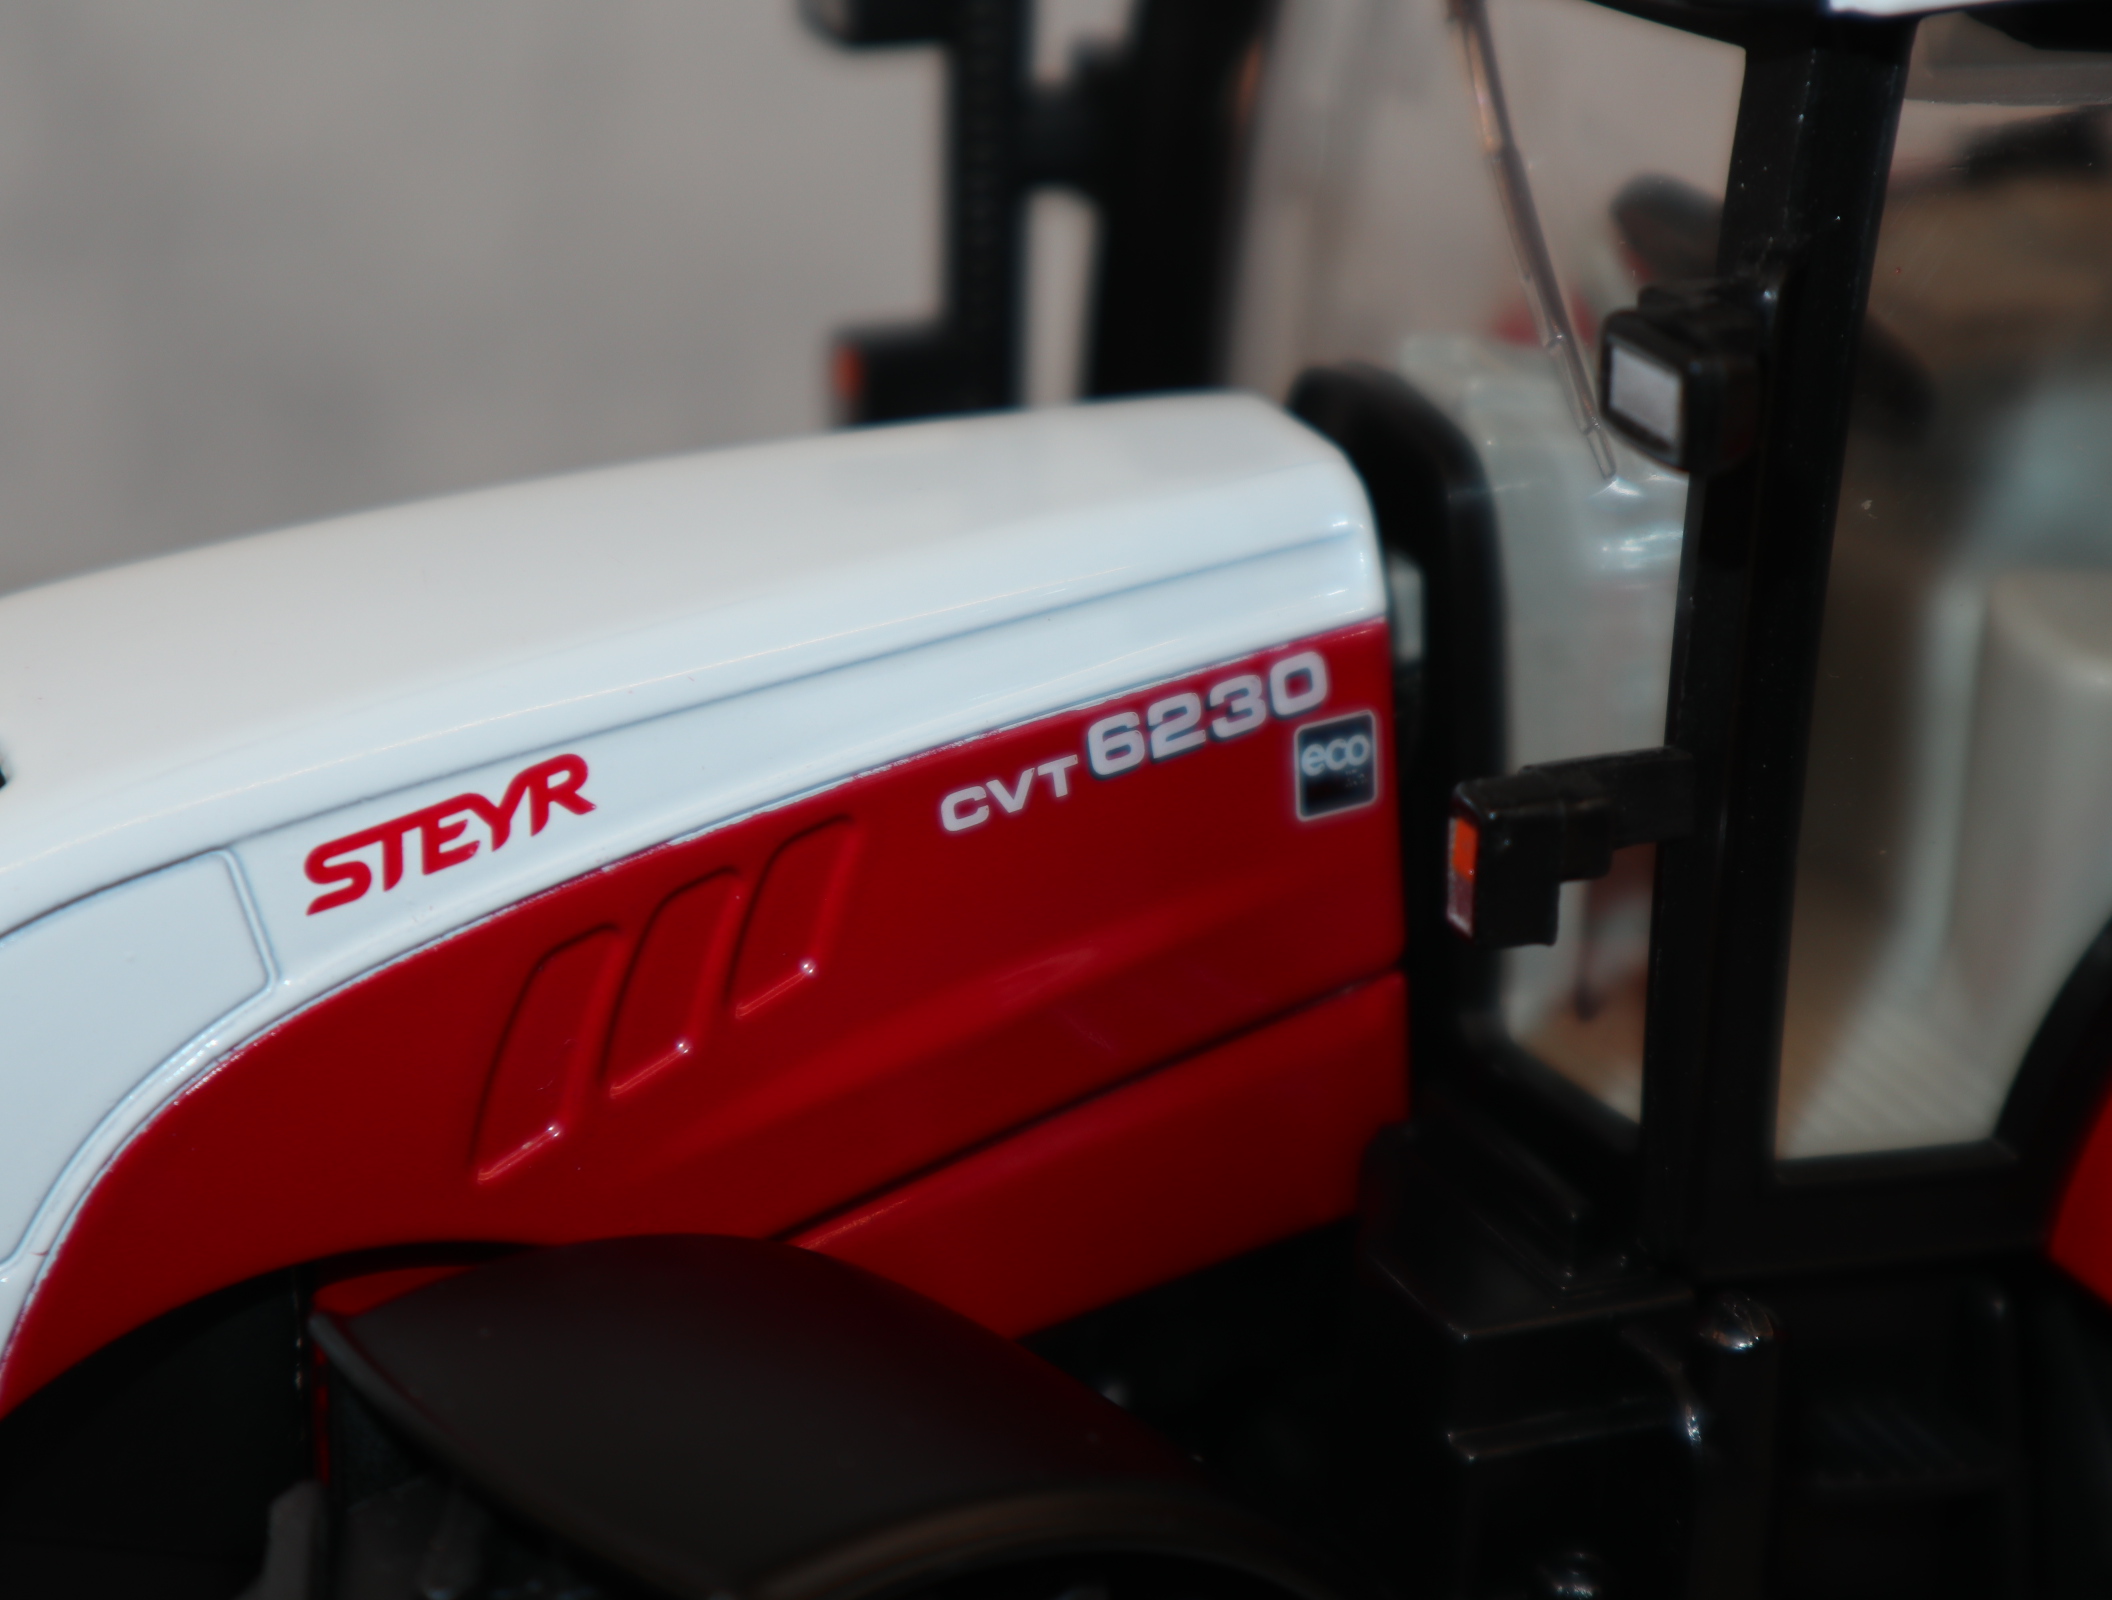 Siku 3283 in 1:32 STEYR  CVT6230 in rot / weiß - Sondermodell -Bild im Händlerkatalog, aber nicht erhältlich , NEU ohne OVP